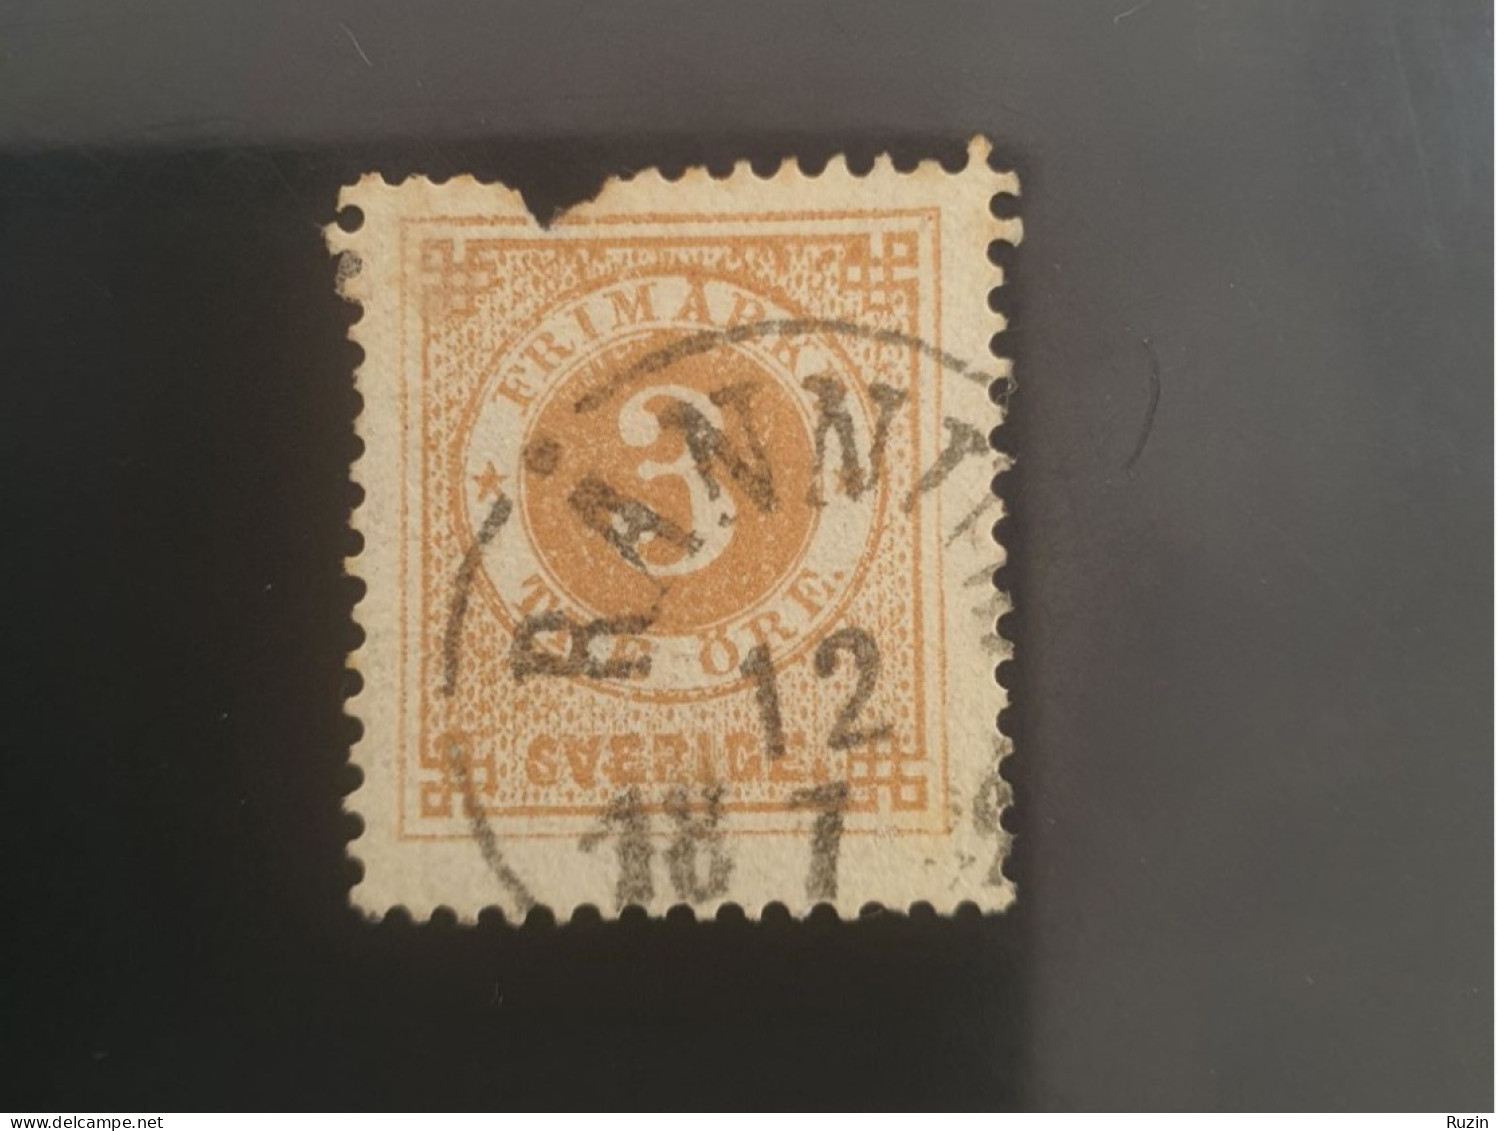 Sweden 1886 Circle Type Stamp 3 öre Yellow Brown - Gebruikt